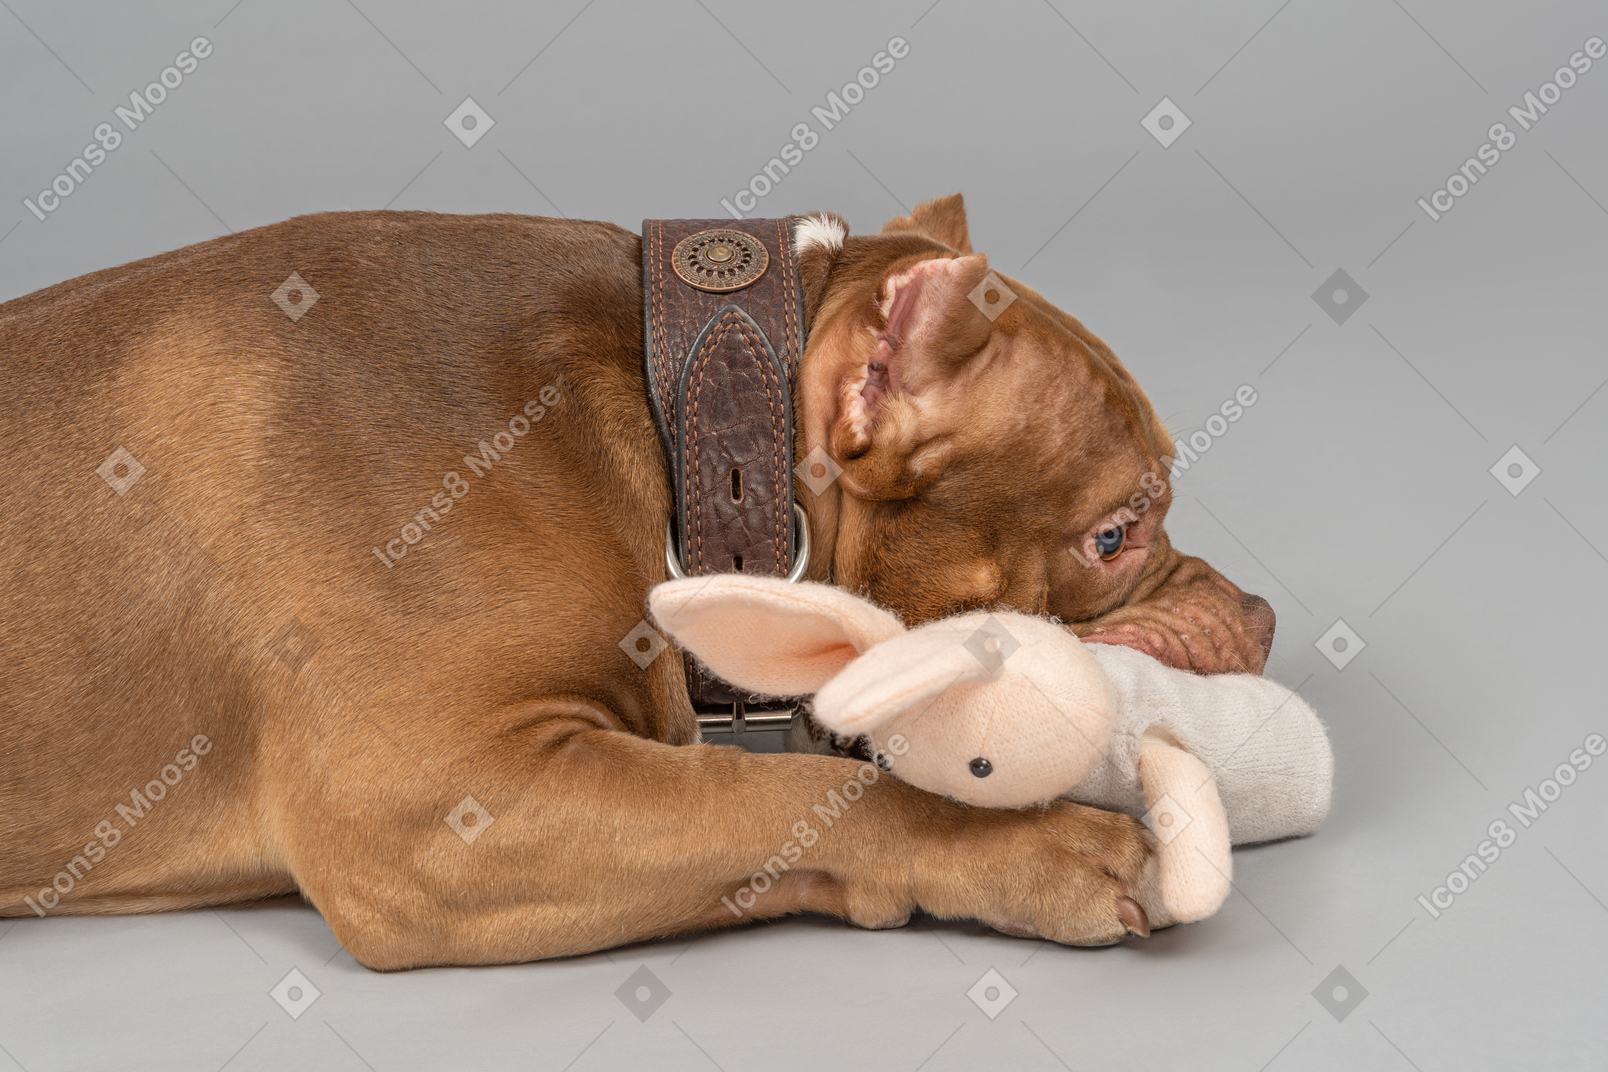 Un perro está jugando con un conejito de juguete